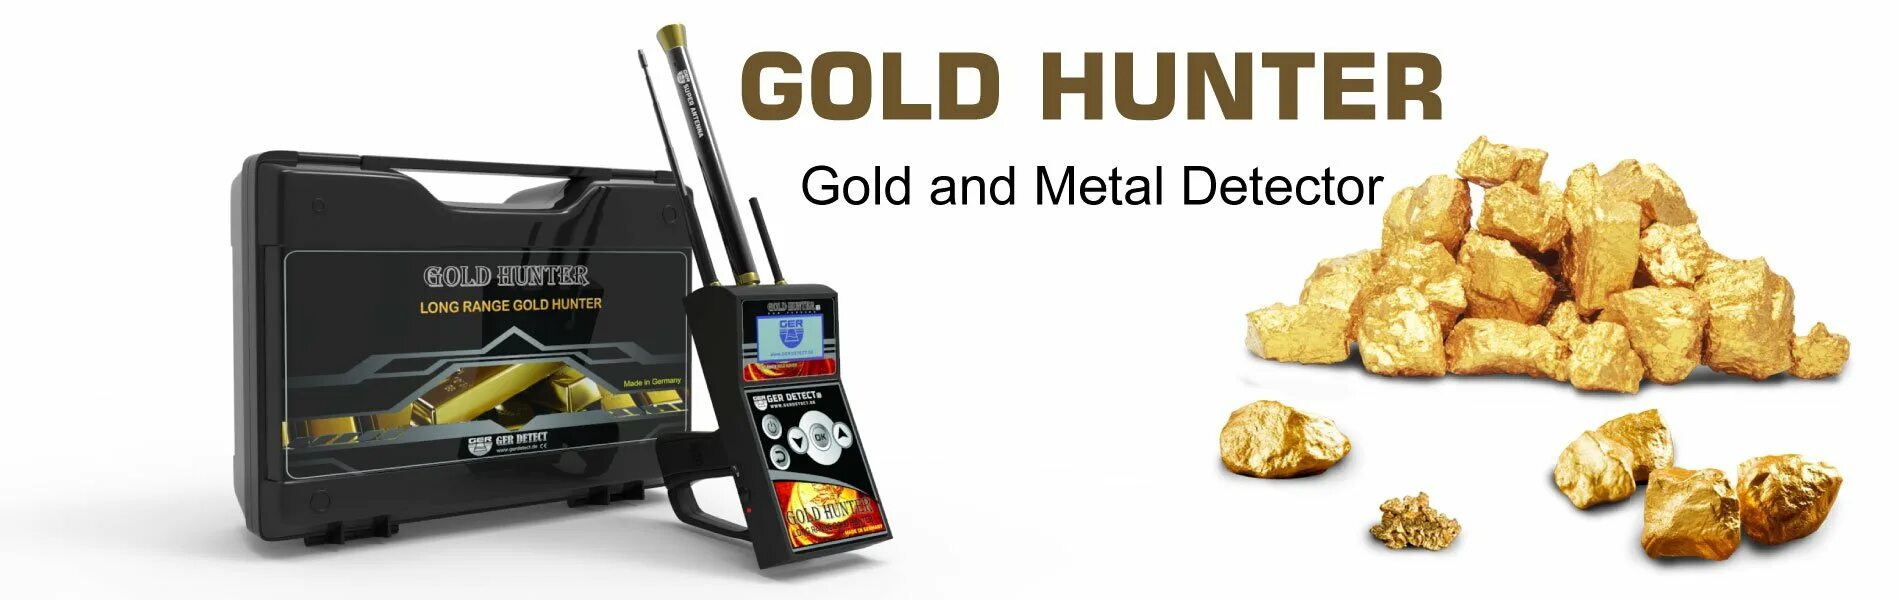 Голд хантер б. Long Ranger Gold металлоискатель. Gold Hunter b75. GH-20 металлоискатель Gold Hunter. Ger detect Gold Hunter комплектация.